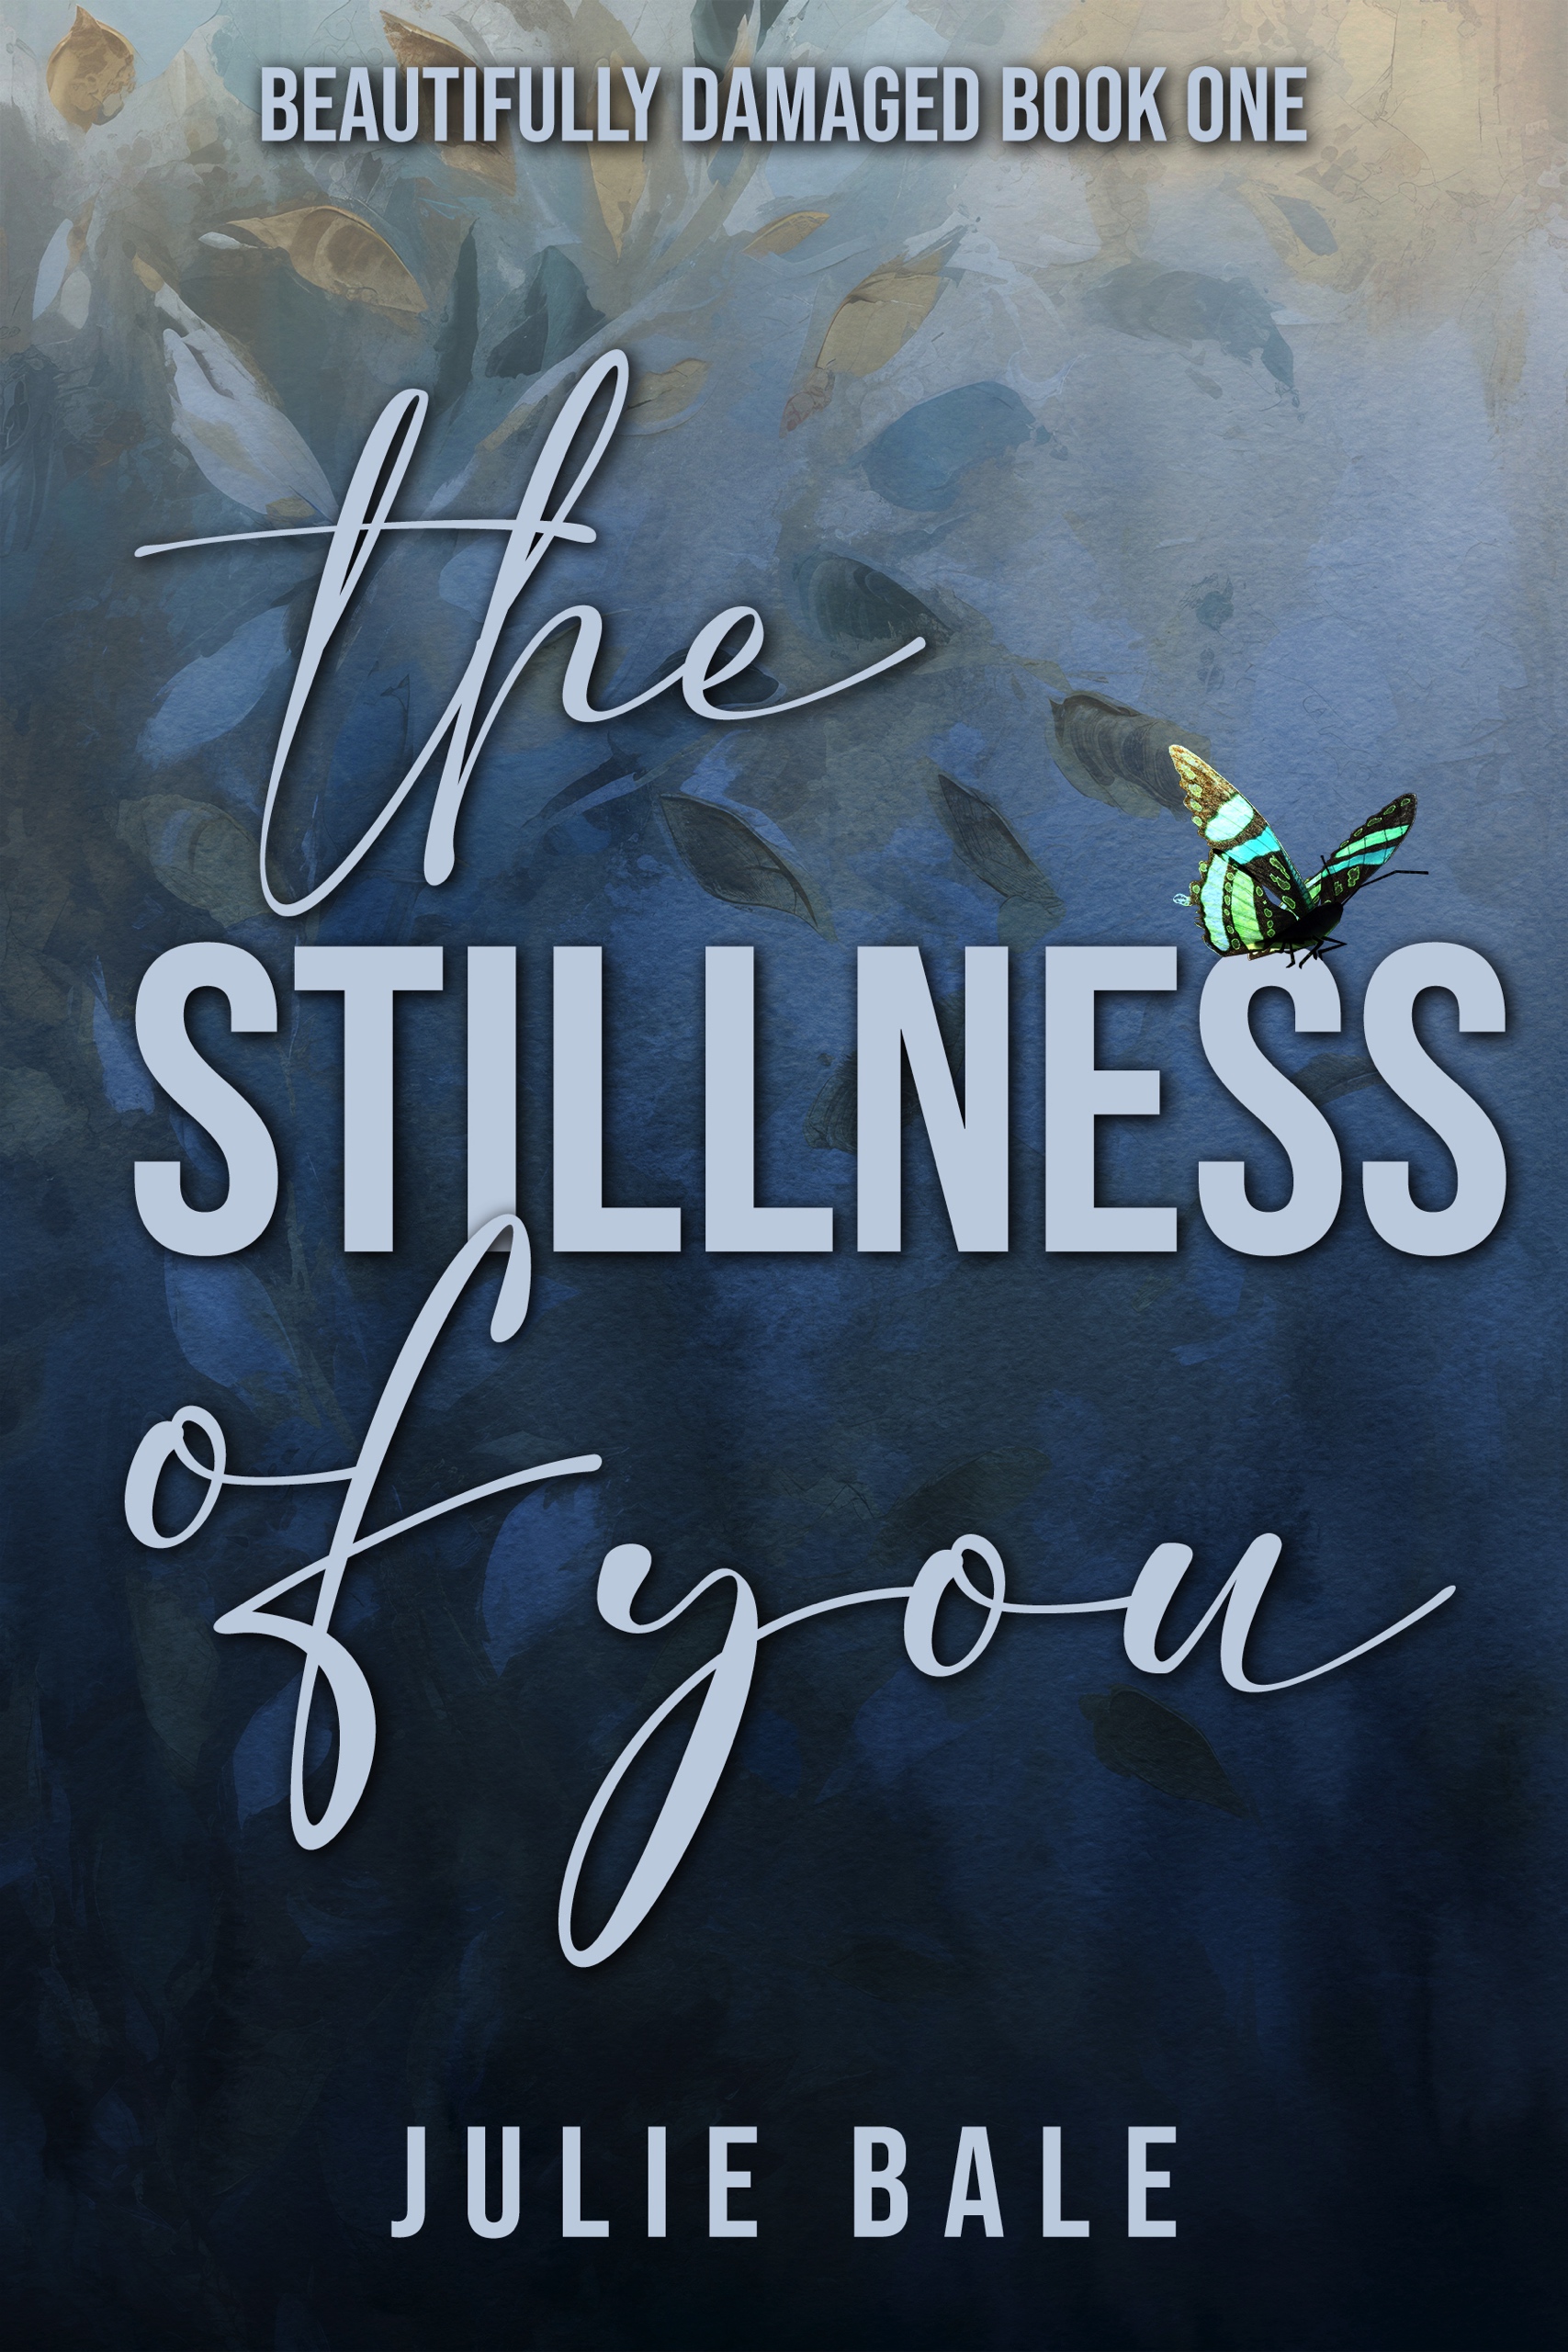 The Stillness Of You by Juliana Stone